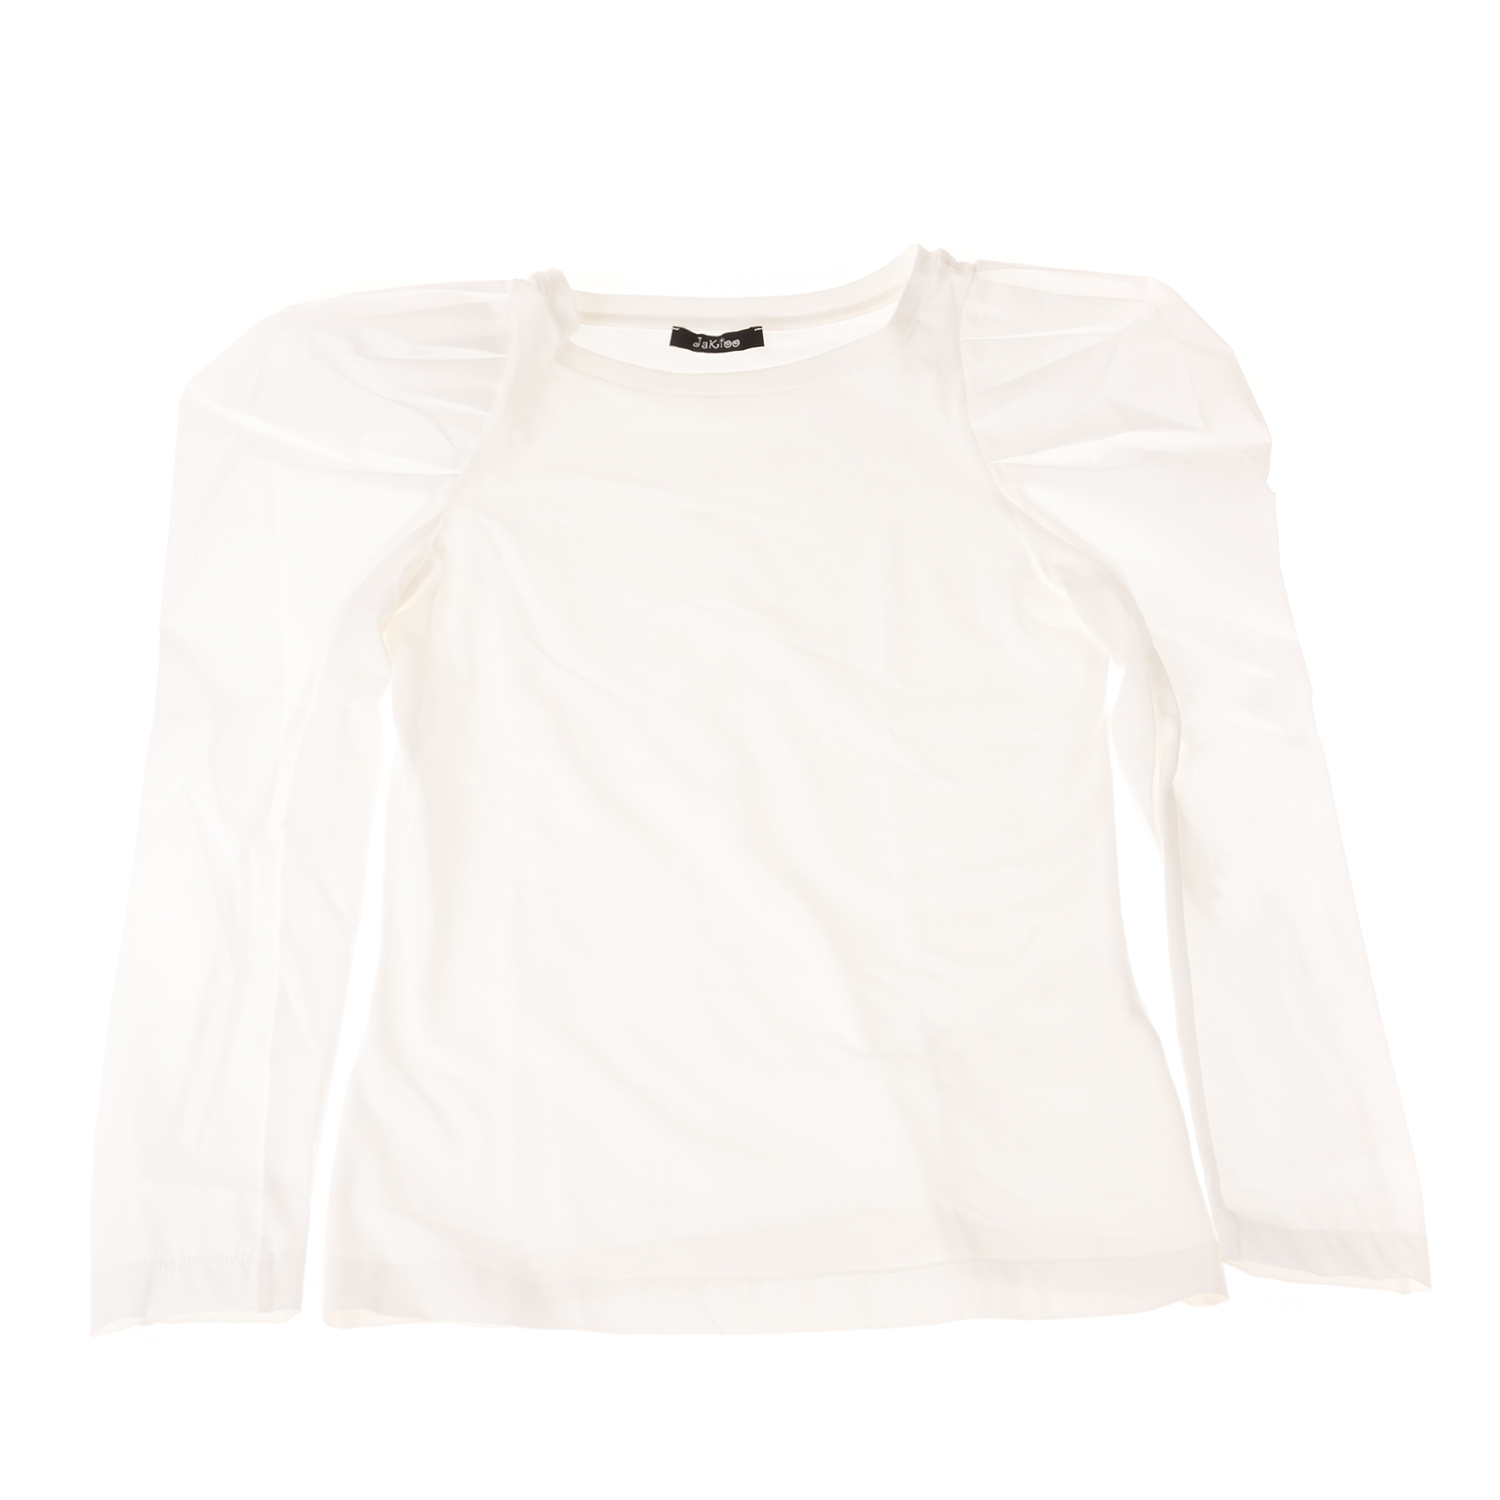 Παιδικά/Girls/Ρούχα/Μπλούζες Μακρυμάνικες JAKIOO - Παιδική μπλούζα JAKIOO T-SHIRT MANICA PIEGOLINE λευκή